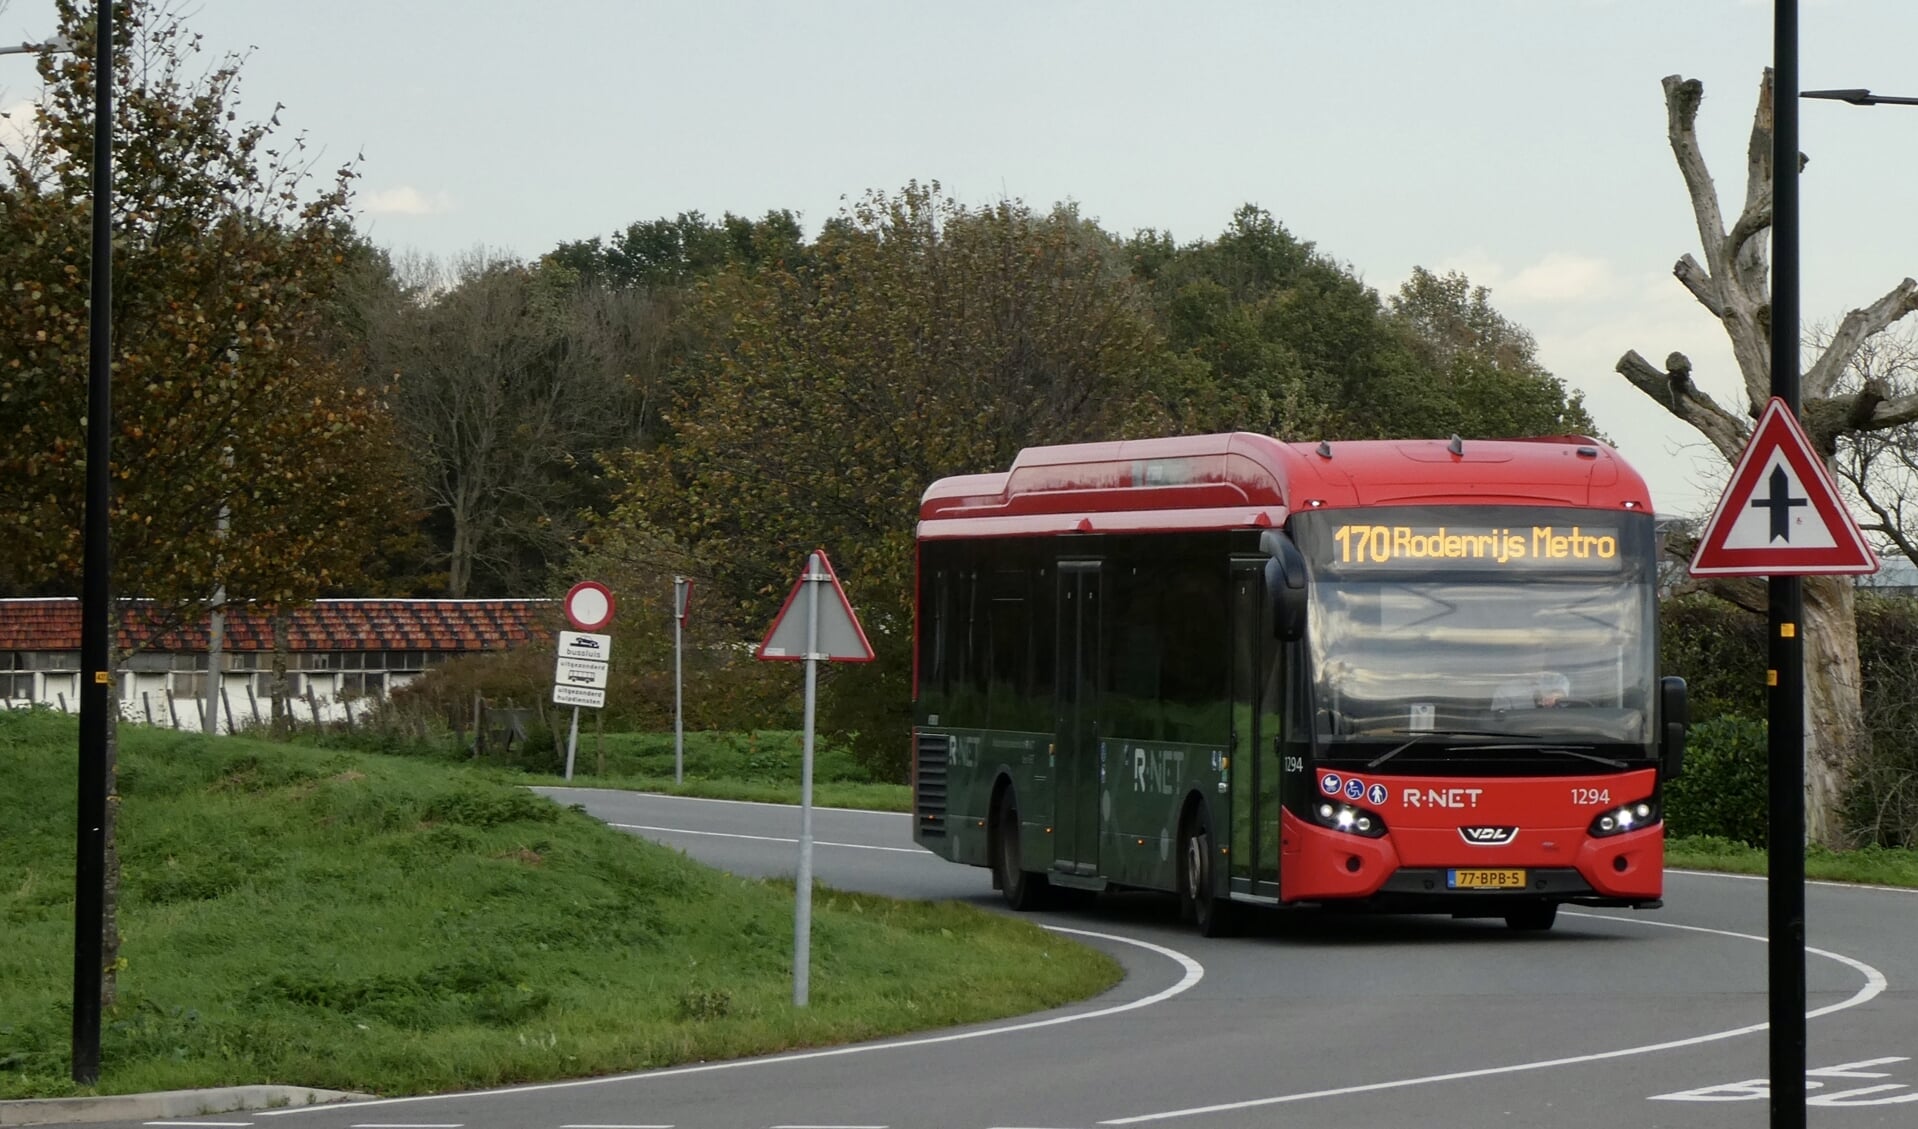 klem schandaal Ontvangst Aantal elektrische bussen bij RET in twee jaar tijd verdubbeld - Adverteren  Lansingerland | Hart van Lansingerland | Krant en Online